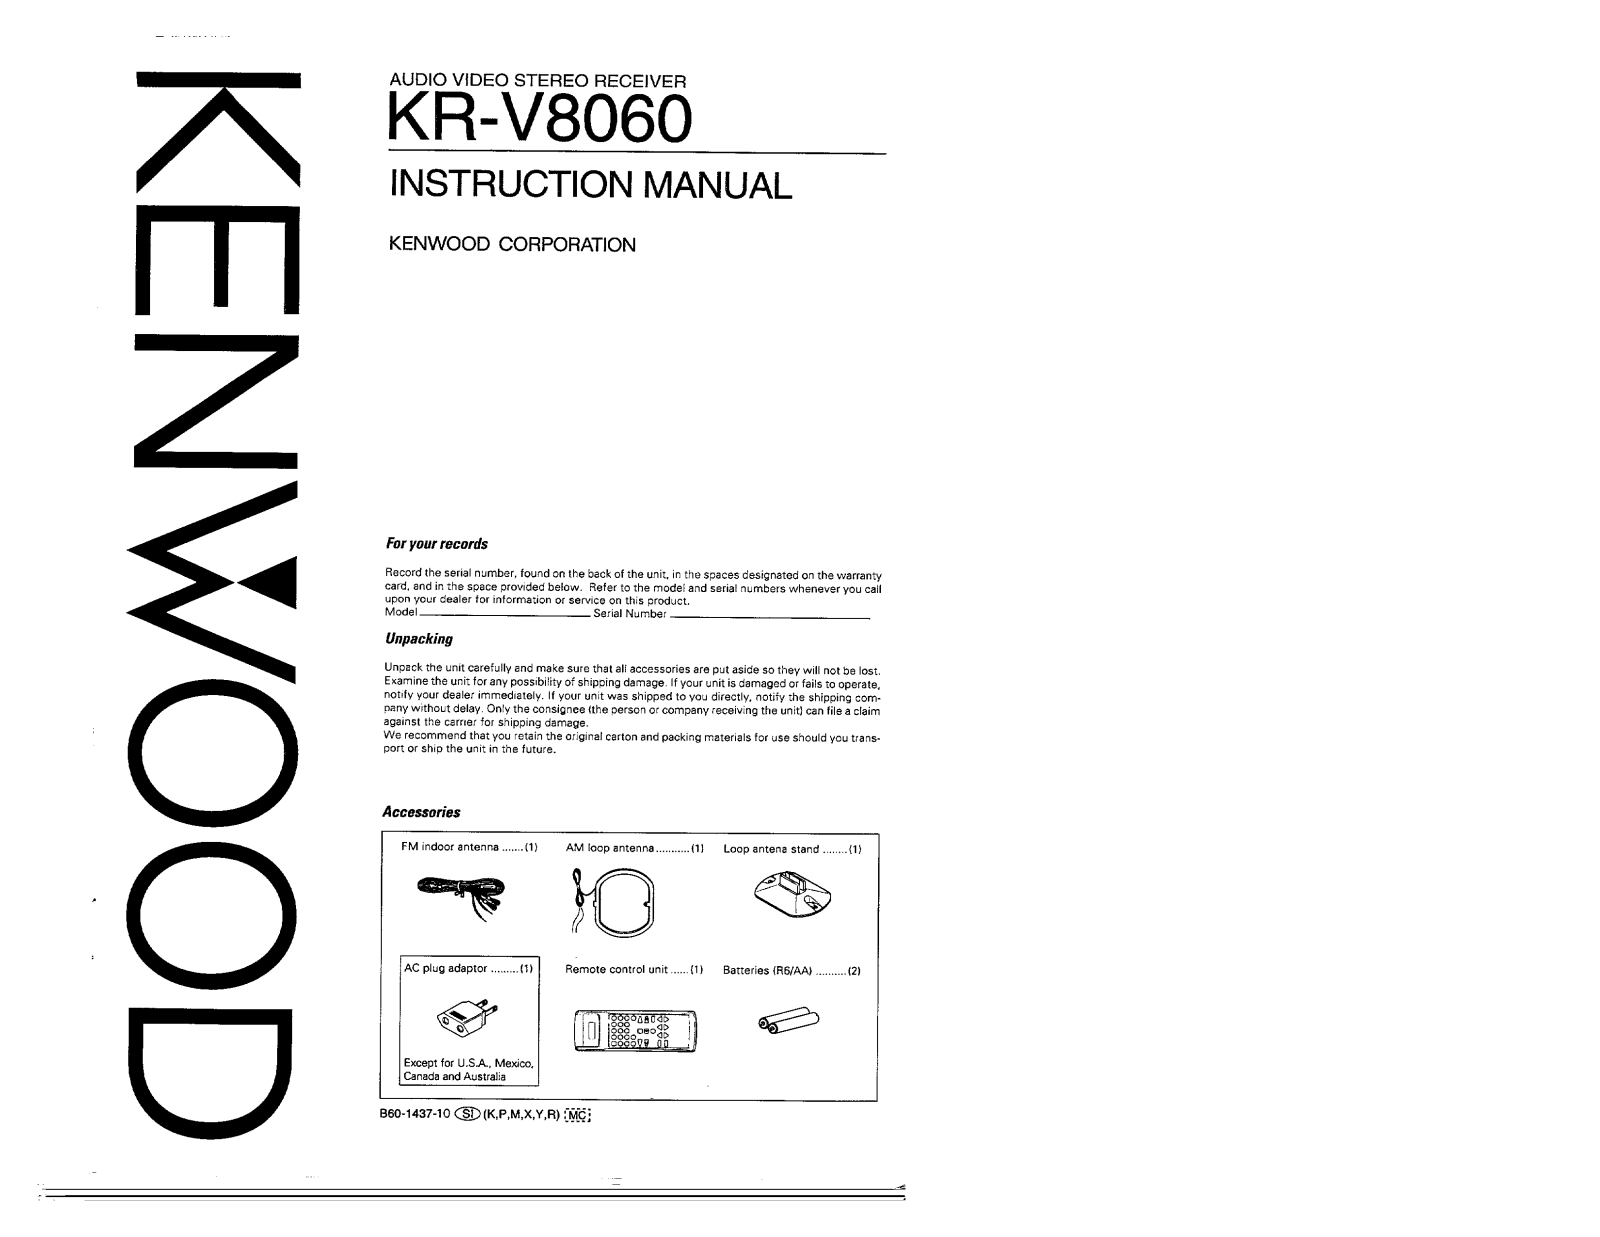 Kenwood KR-V8060 Owner's Manual